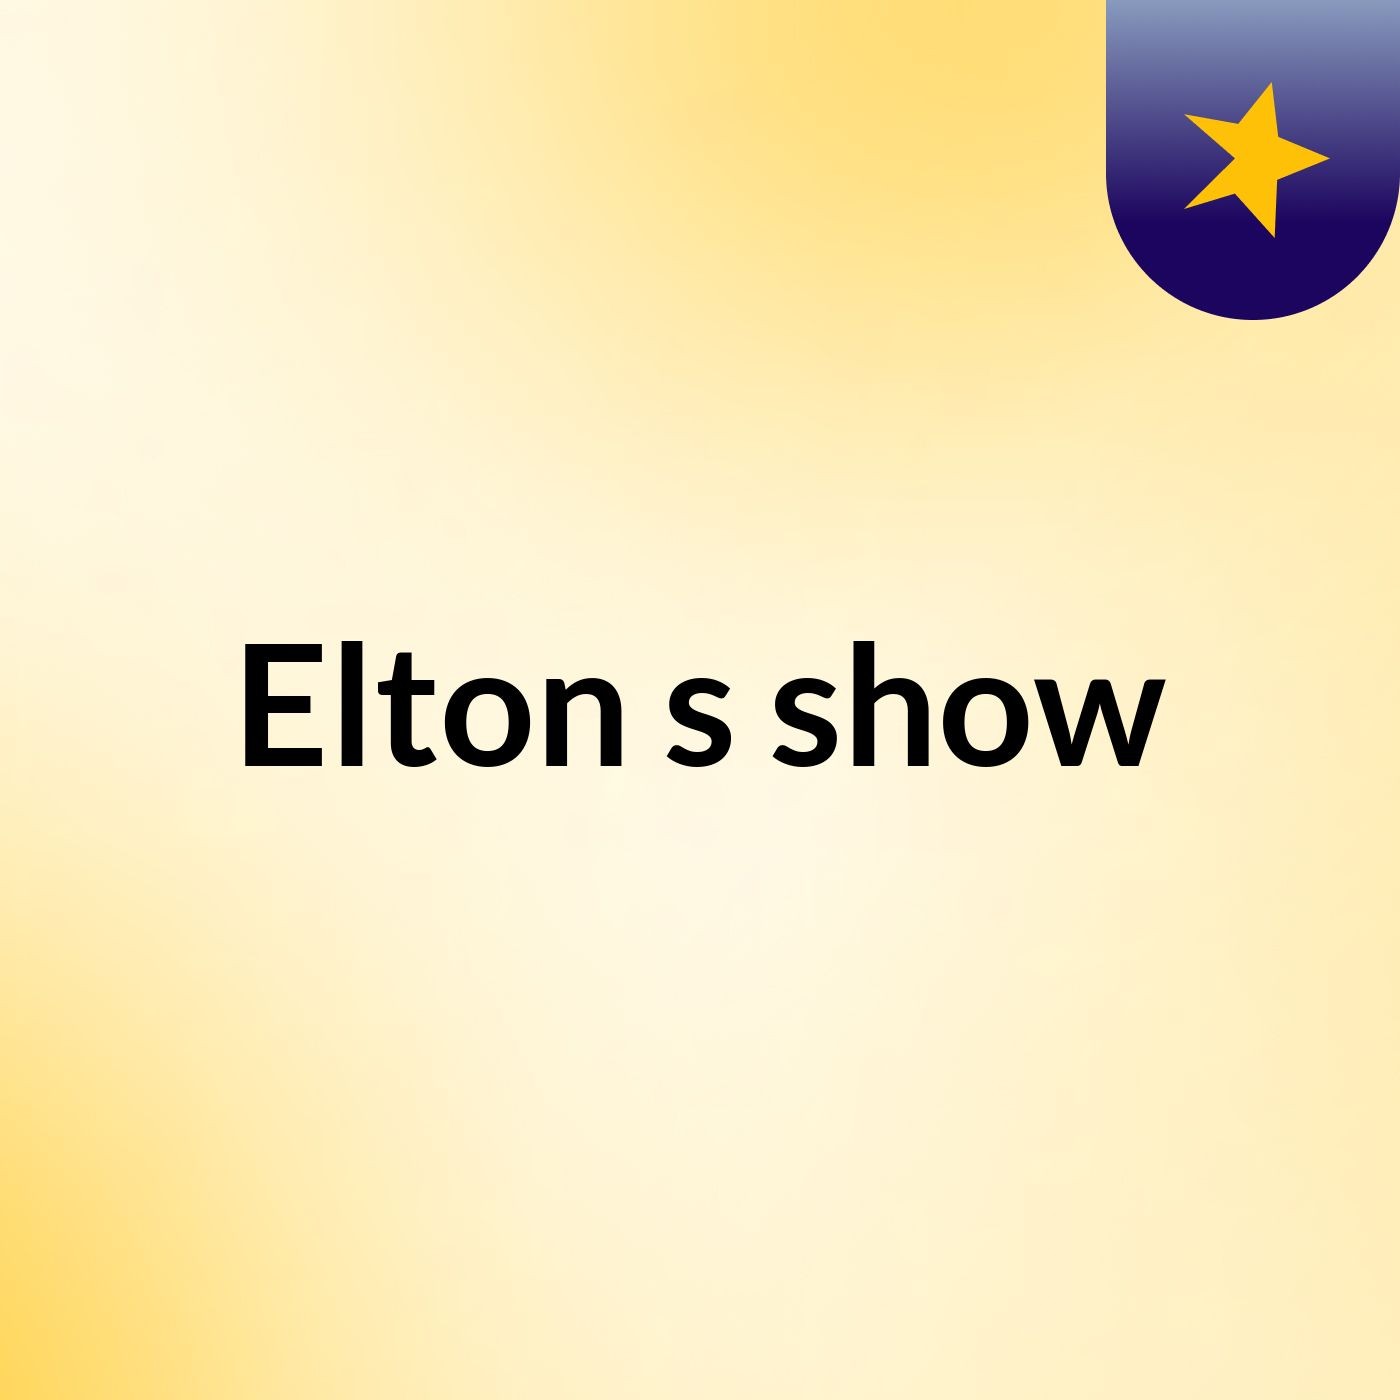 Elton's show